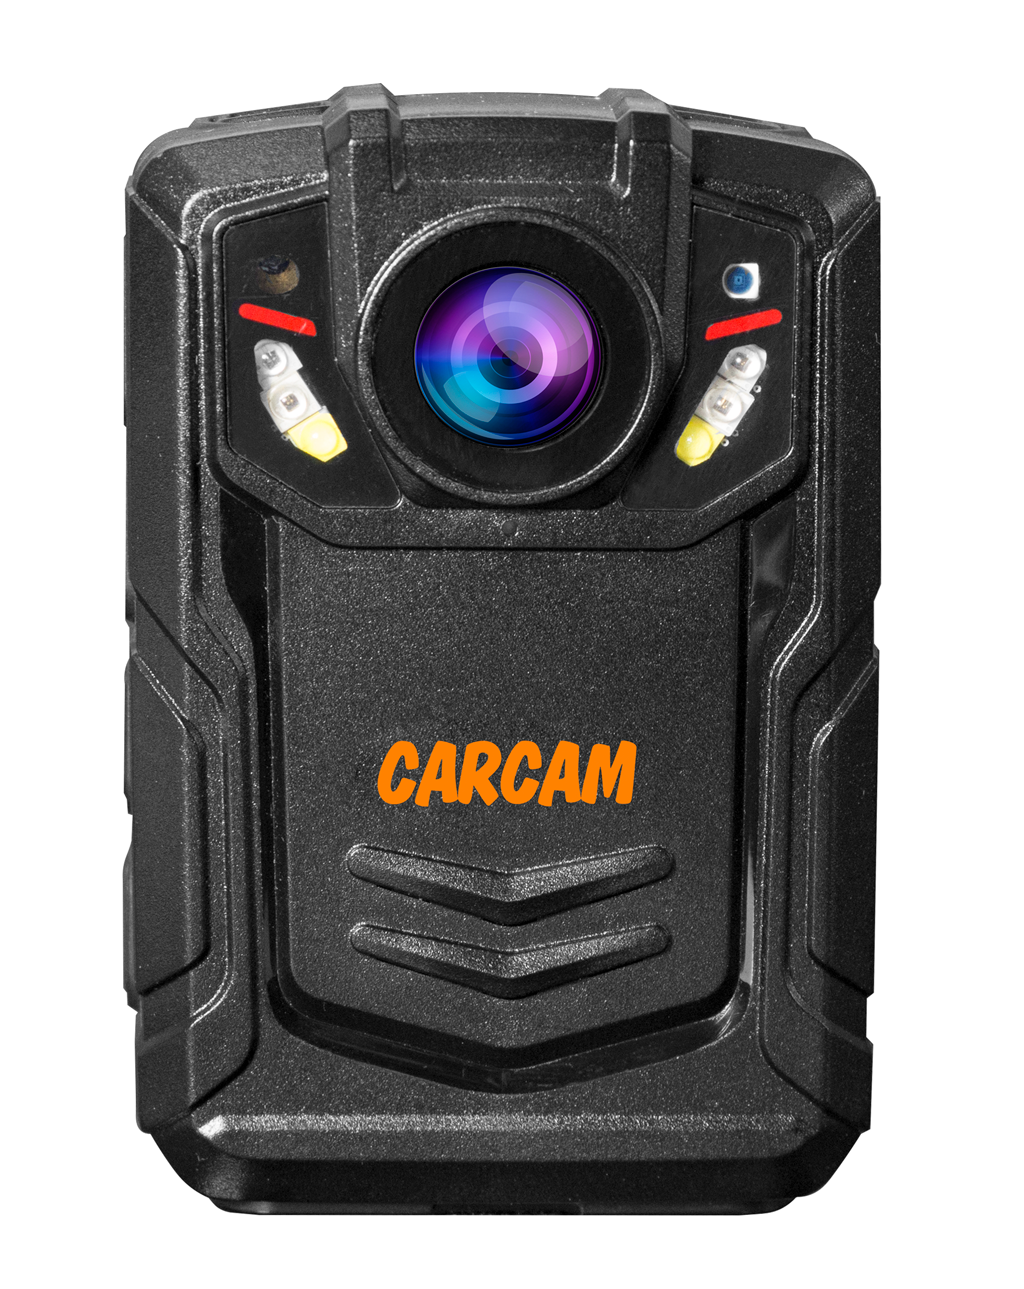 Персональный Quad HD видеорегистратор  CARCAM COMBAT 2S/4G 32GB персональный quad hd видеорегистратор для работников технических объектов carcam combat 2s prof 256gb